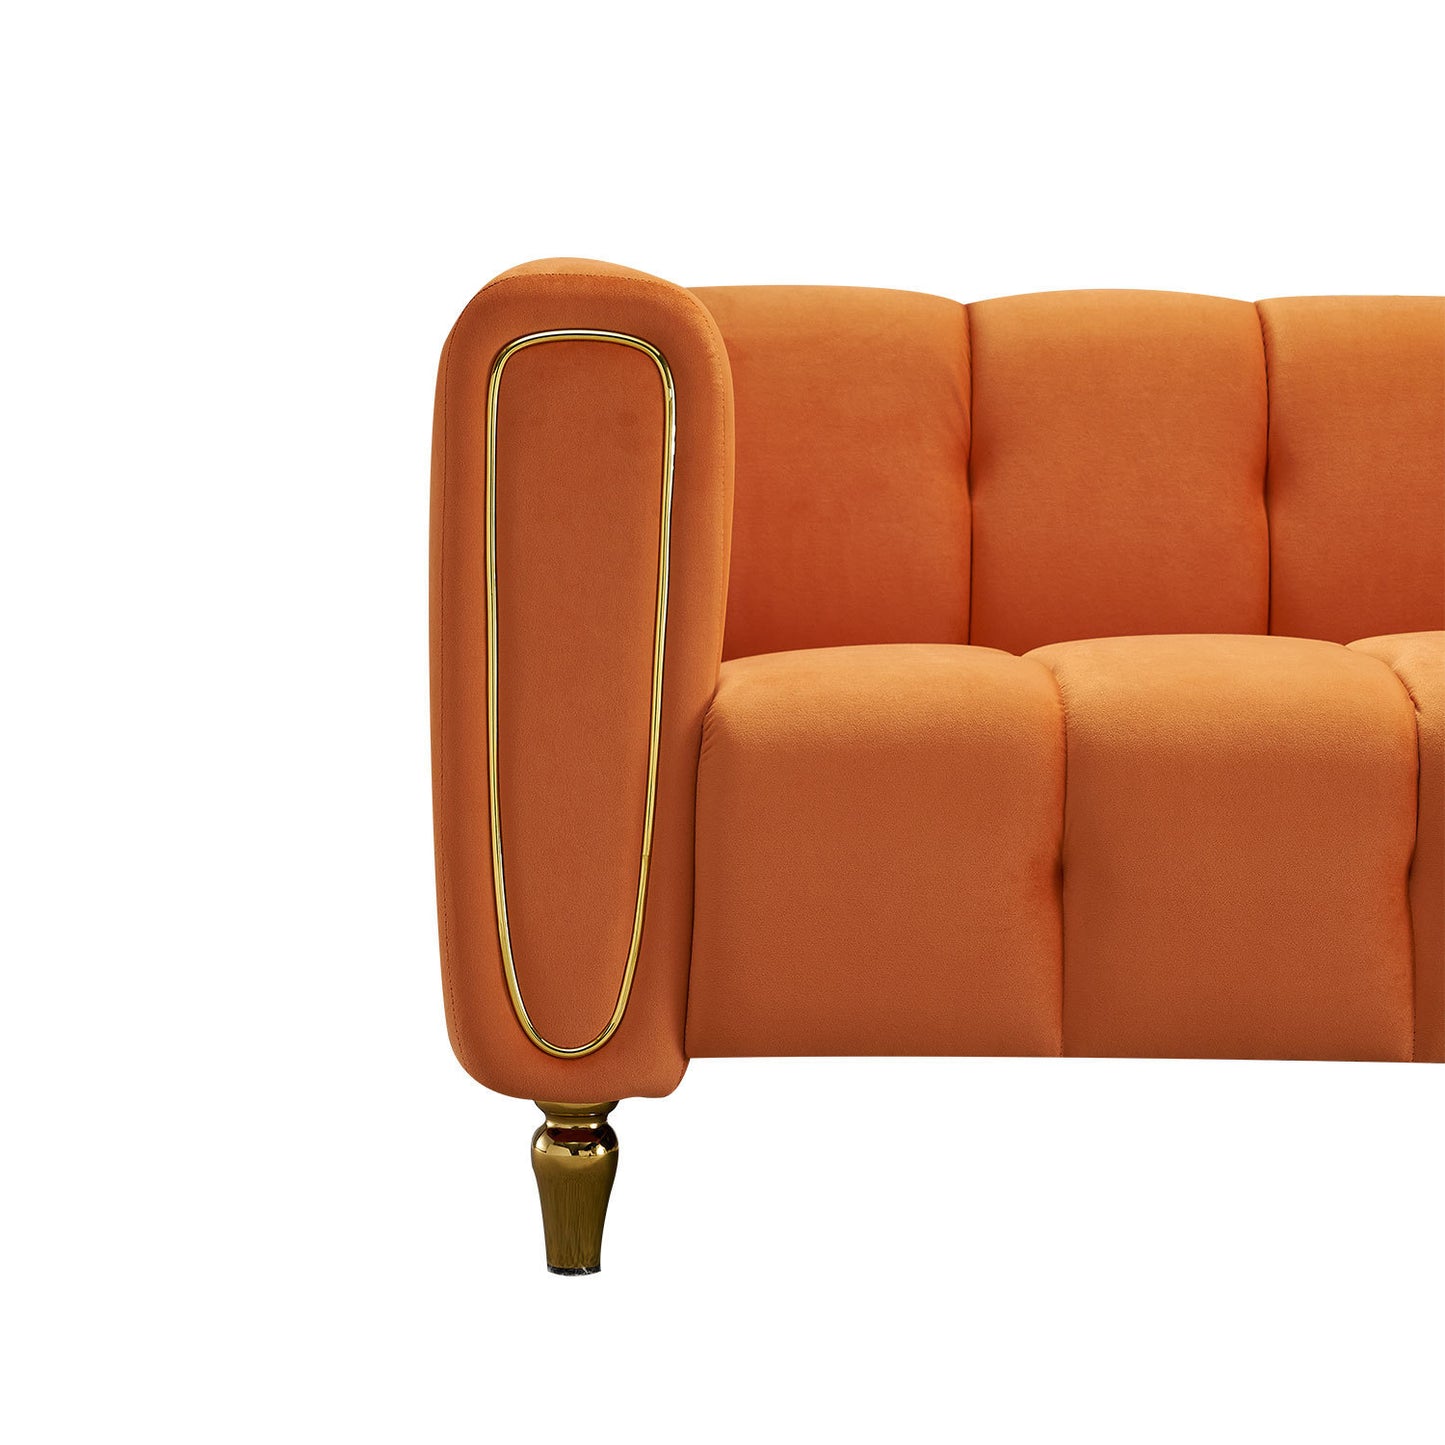 Modern Velvet Sofa 83.07 inch for Living Room Orange Color - Enova Luxe Home Store